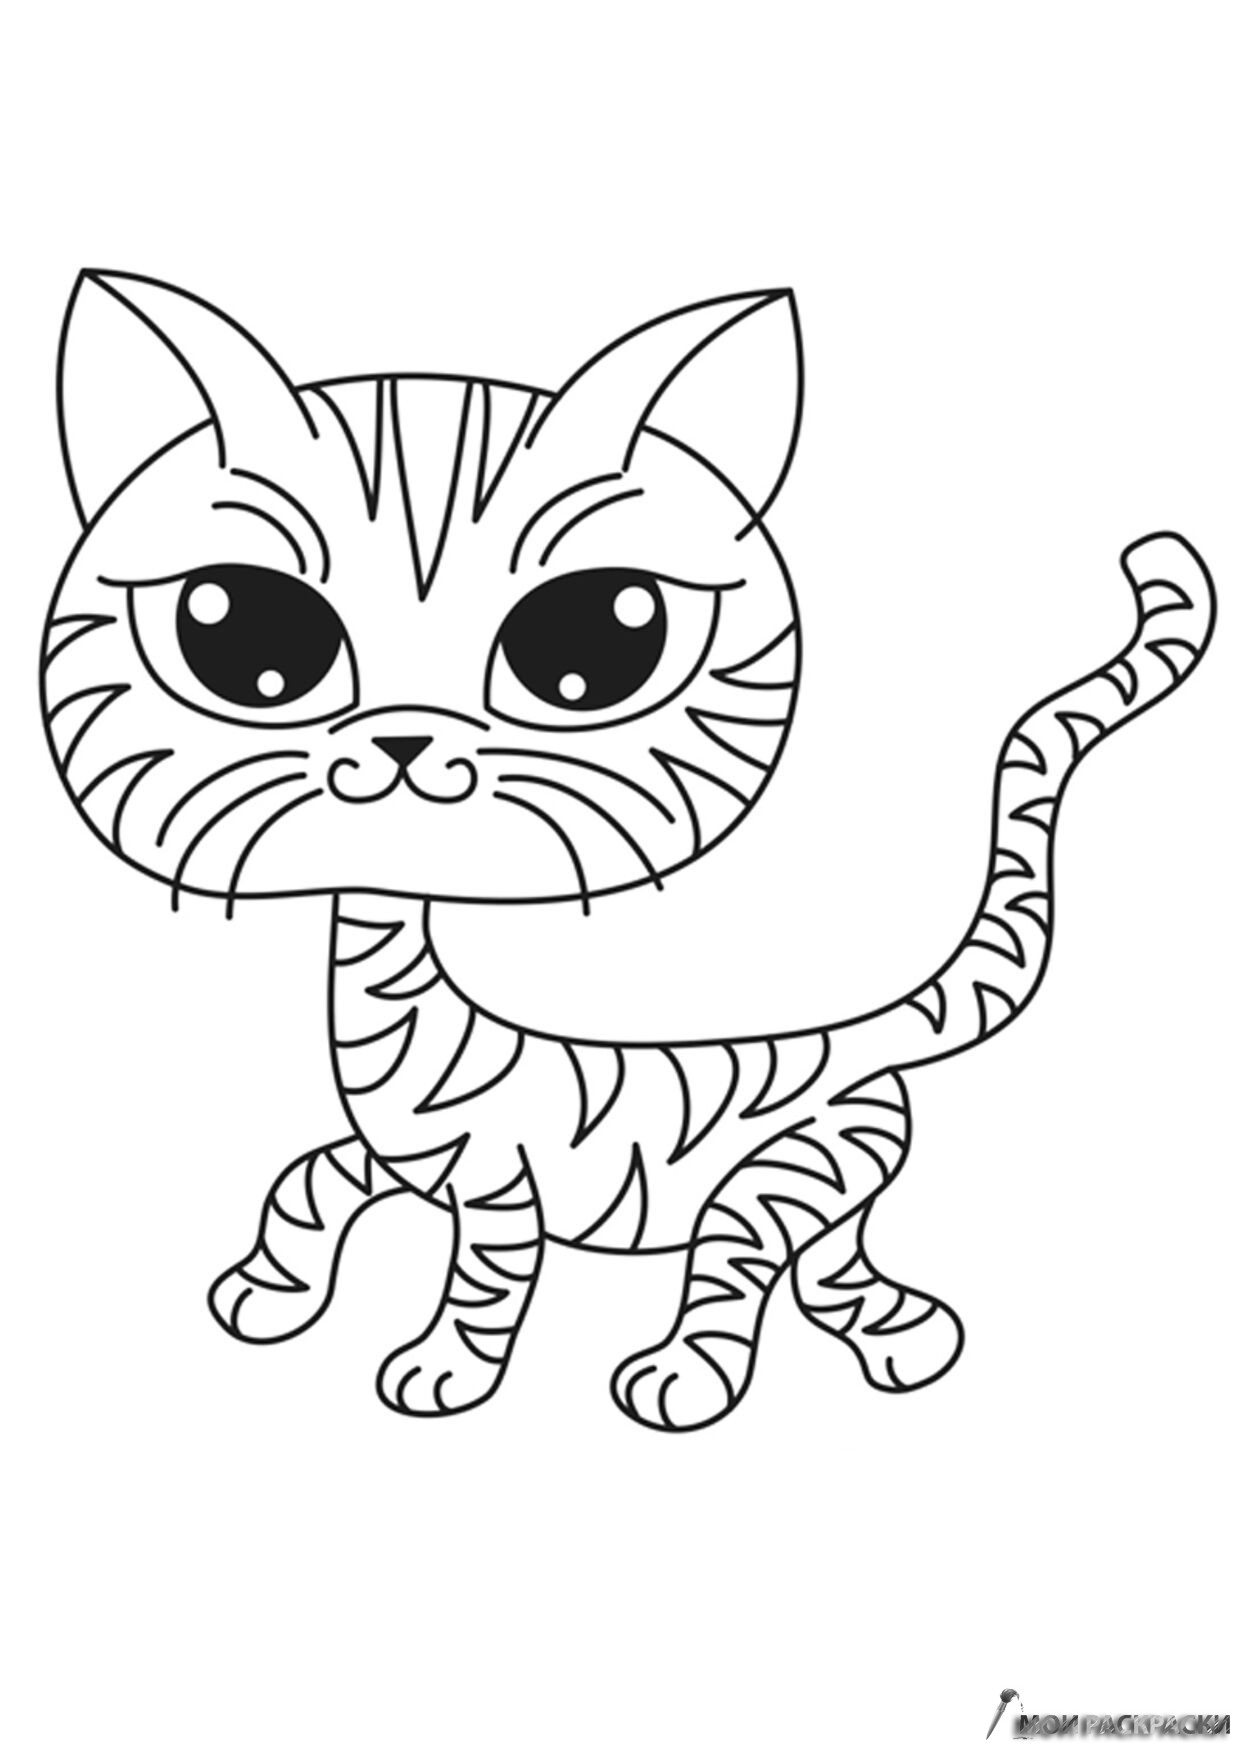 Раскраска кошки для детей 4 5 лет. Раскраска. Котики. Раскраска кот. Кошечка для раскрашивания. Котенок. Раскраска.